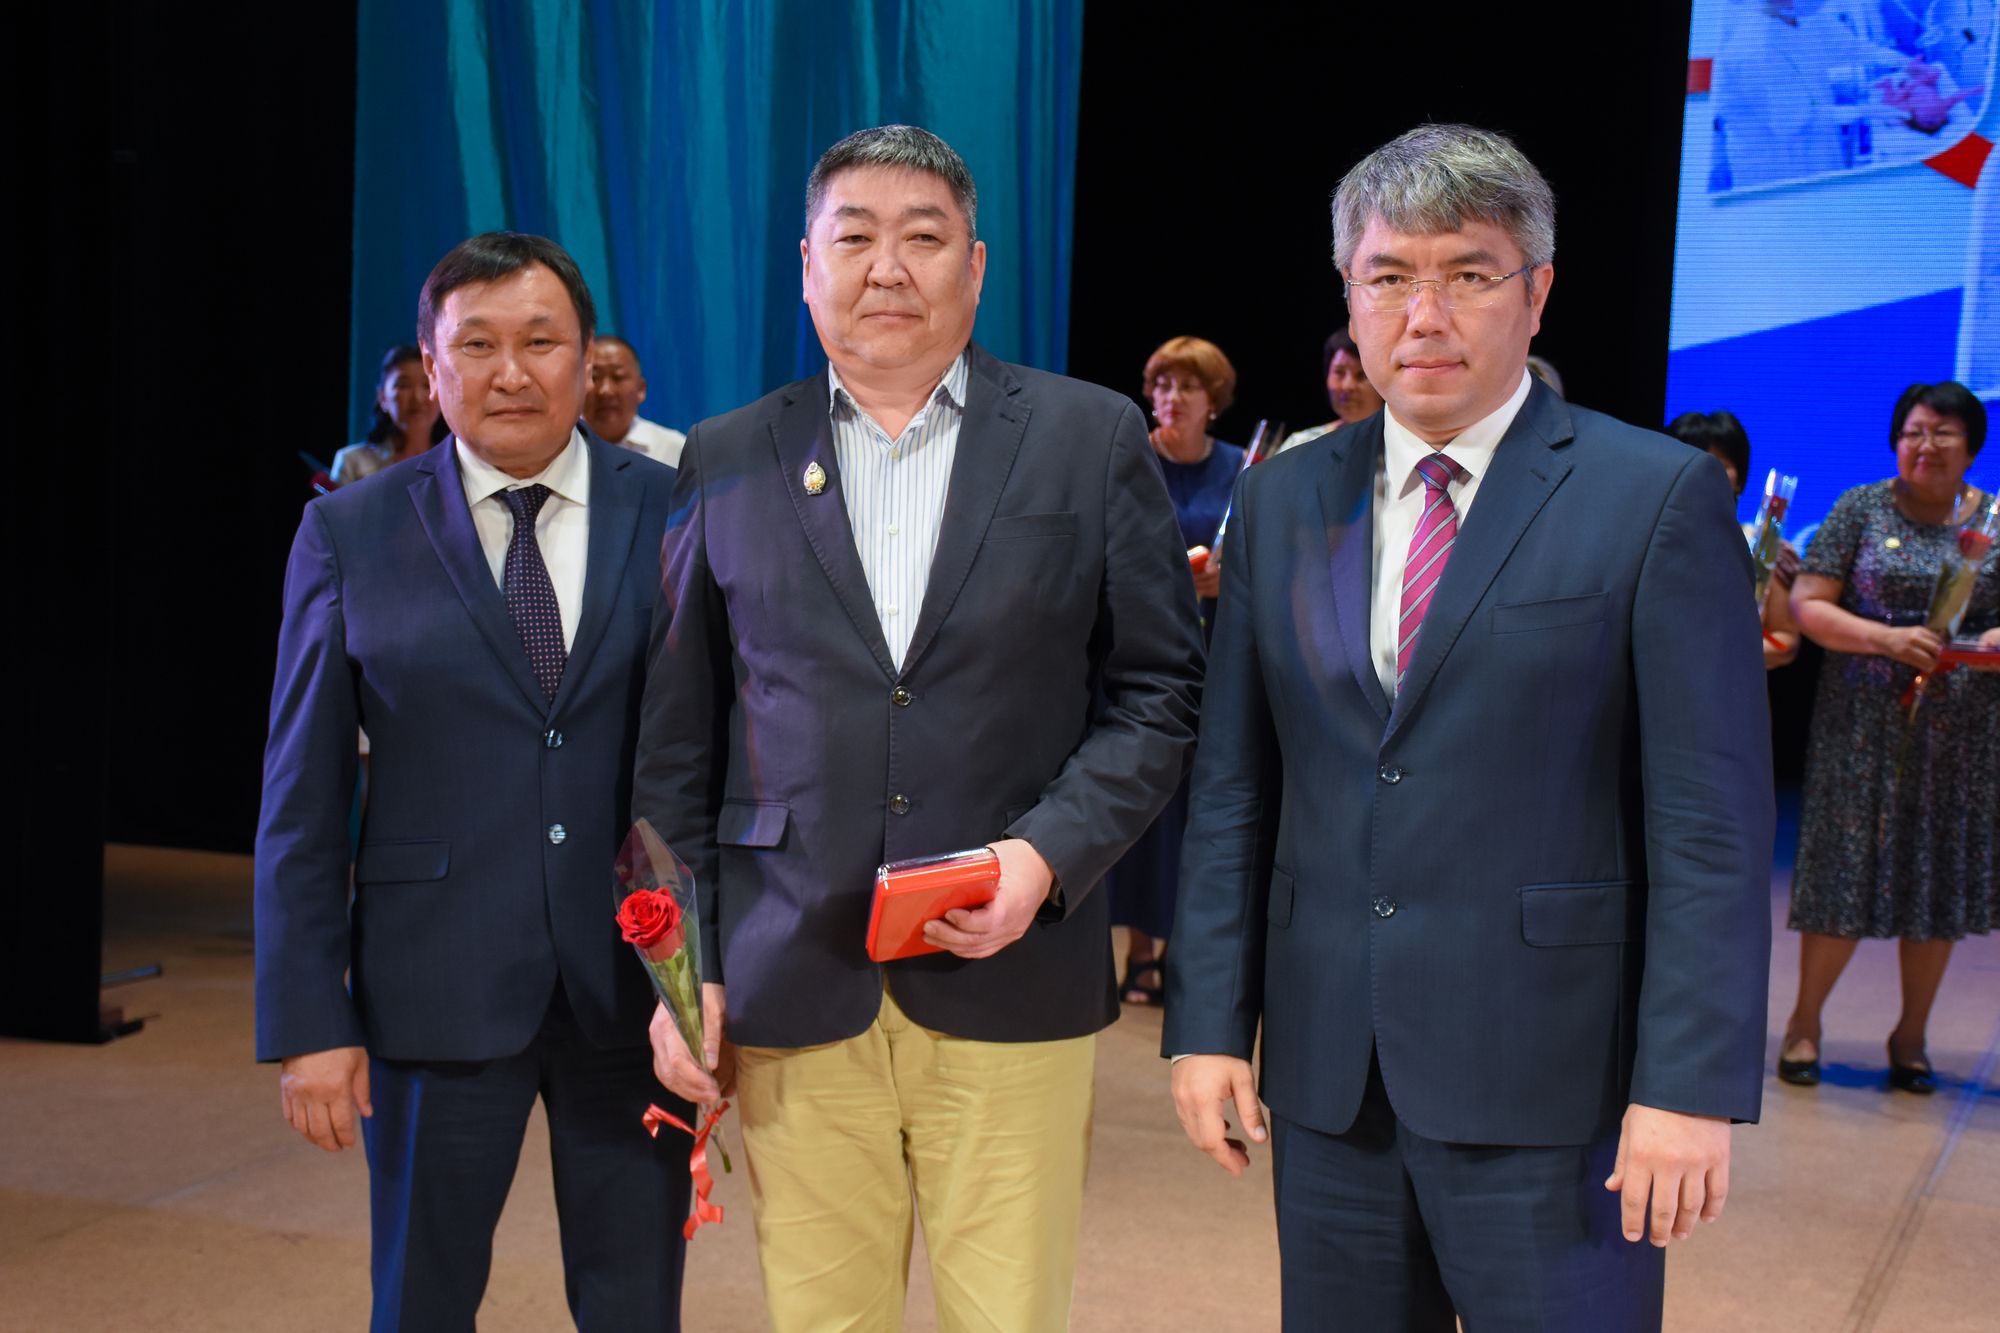 6 врачей РКБ получили почетное звание "Заслуженный врач Республики Бурятия"